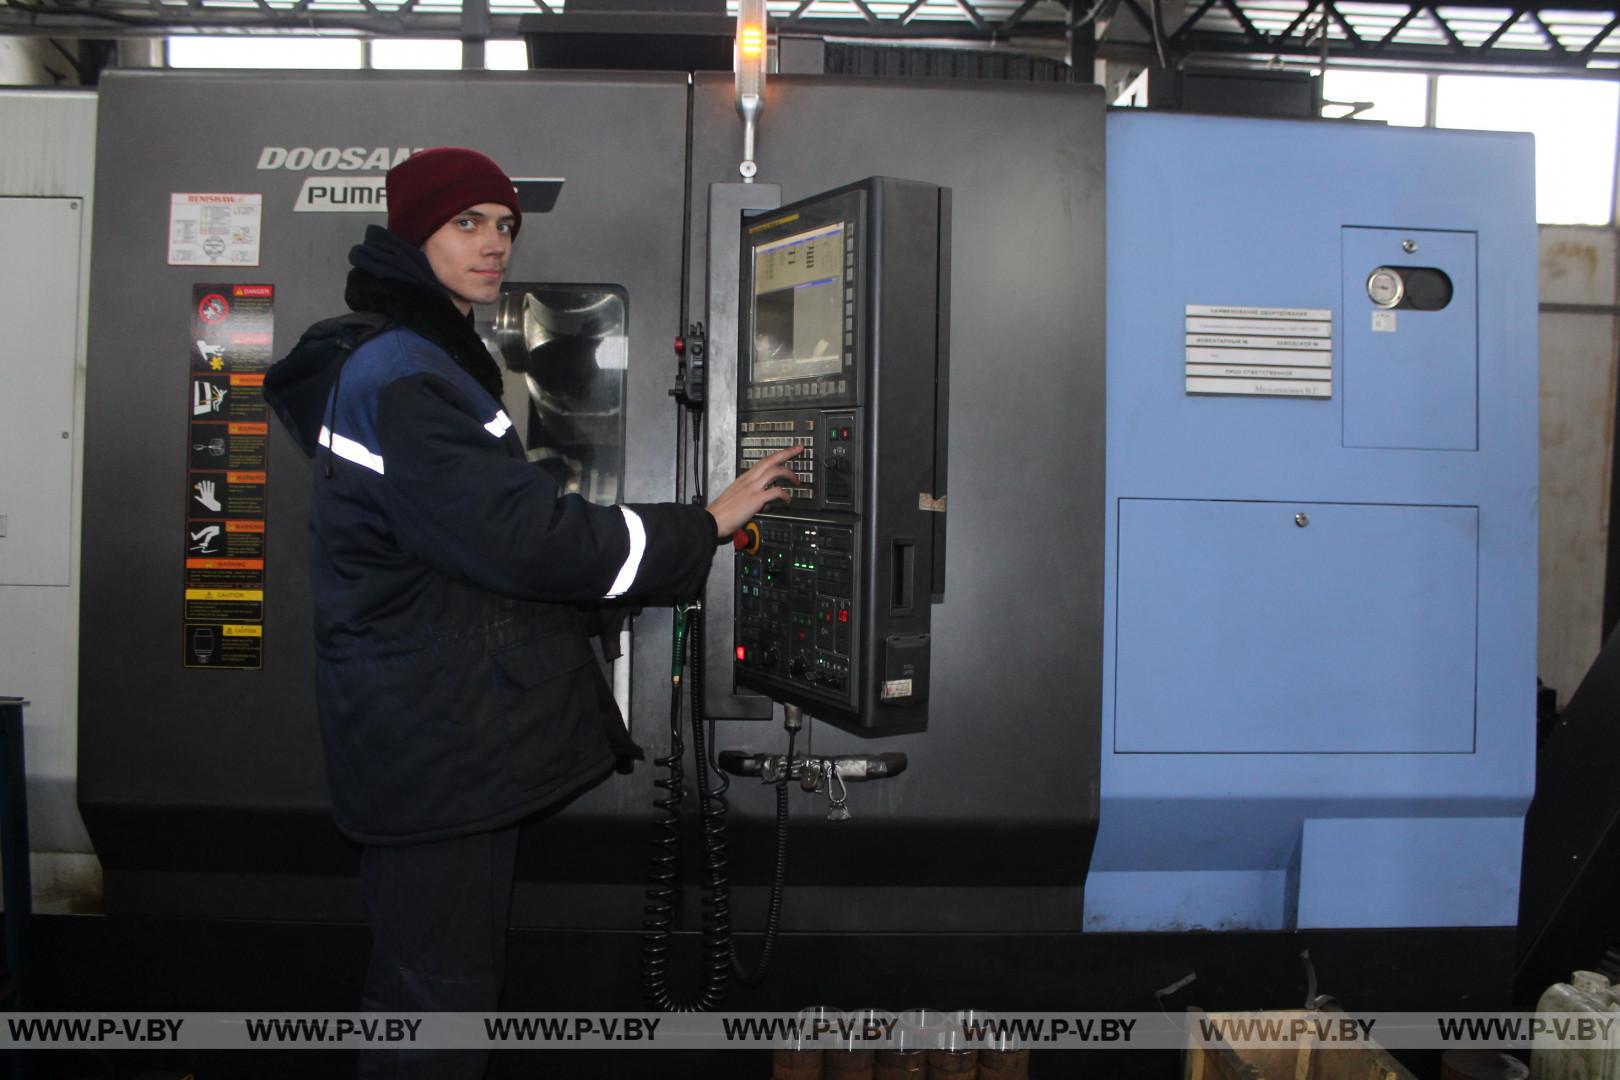 Пинский опытно-механический завод продолжает совершенствовать производство высокотехнологичных многоступенчатых насосов.